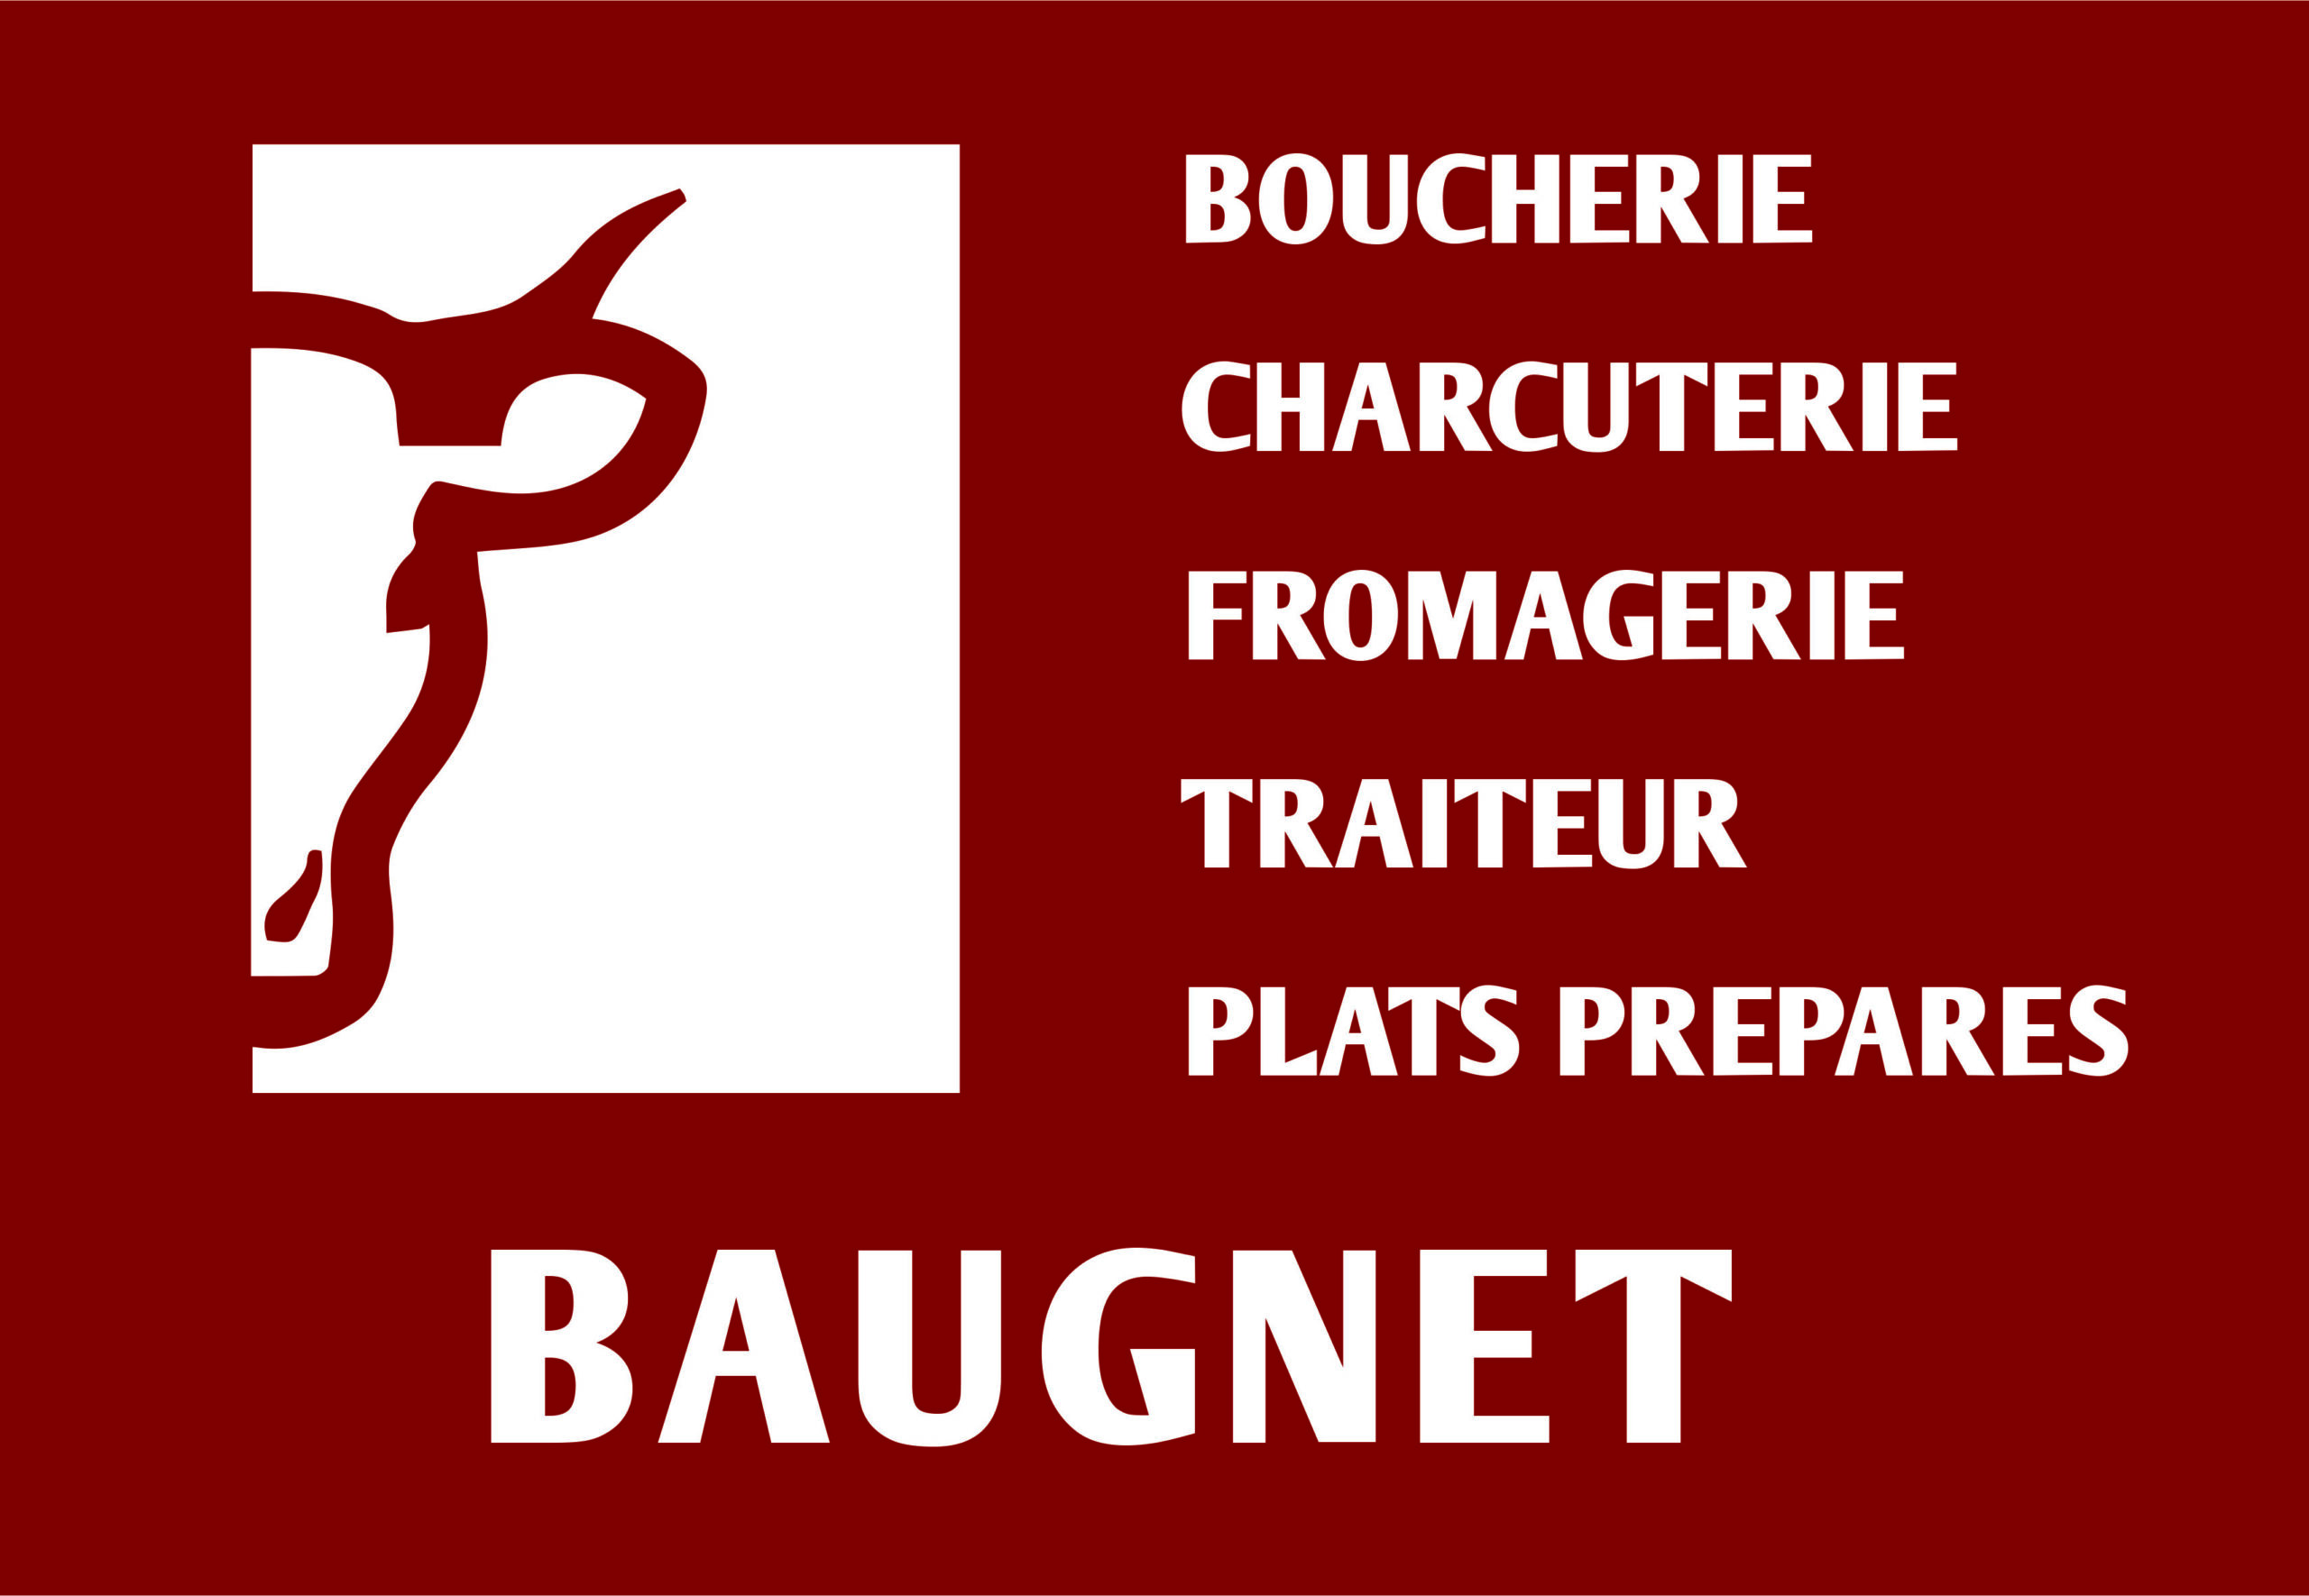 Boucherie Baugnet